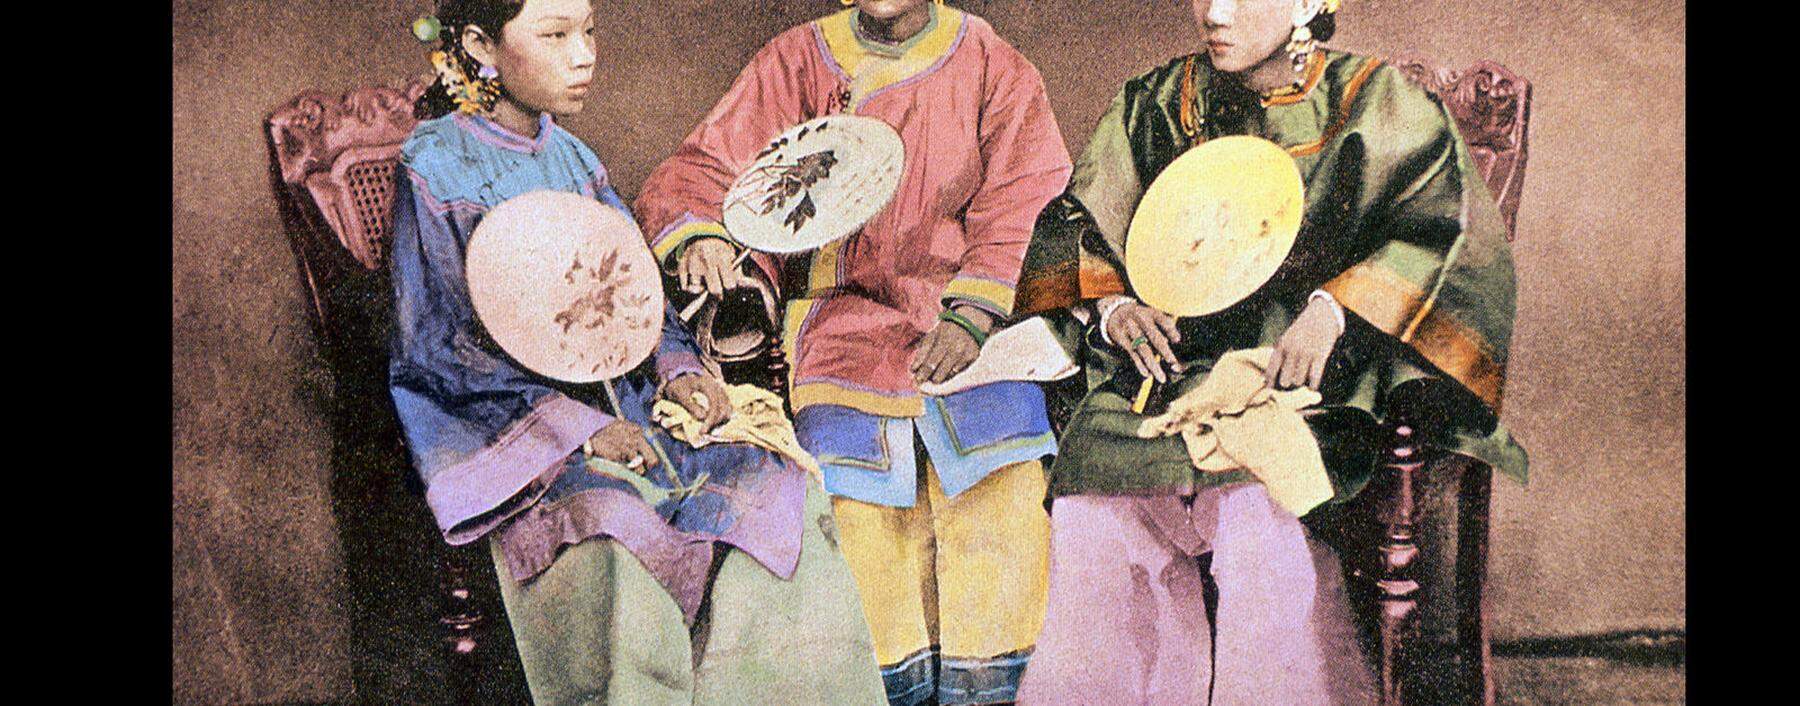 Chinesische Frauen vom Beginn des 20. Jahrhunderts, entsprechend dem Schönheitsideal mit gebundenen Füßen.